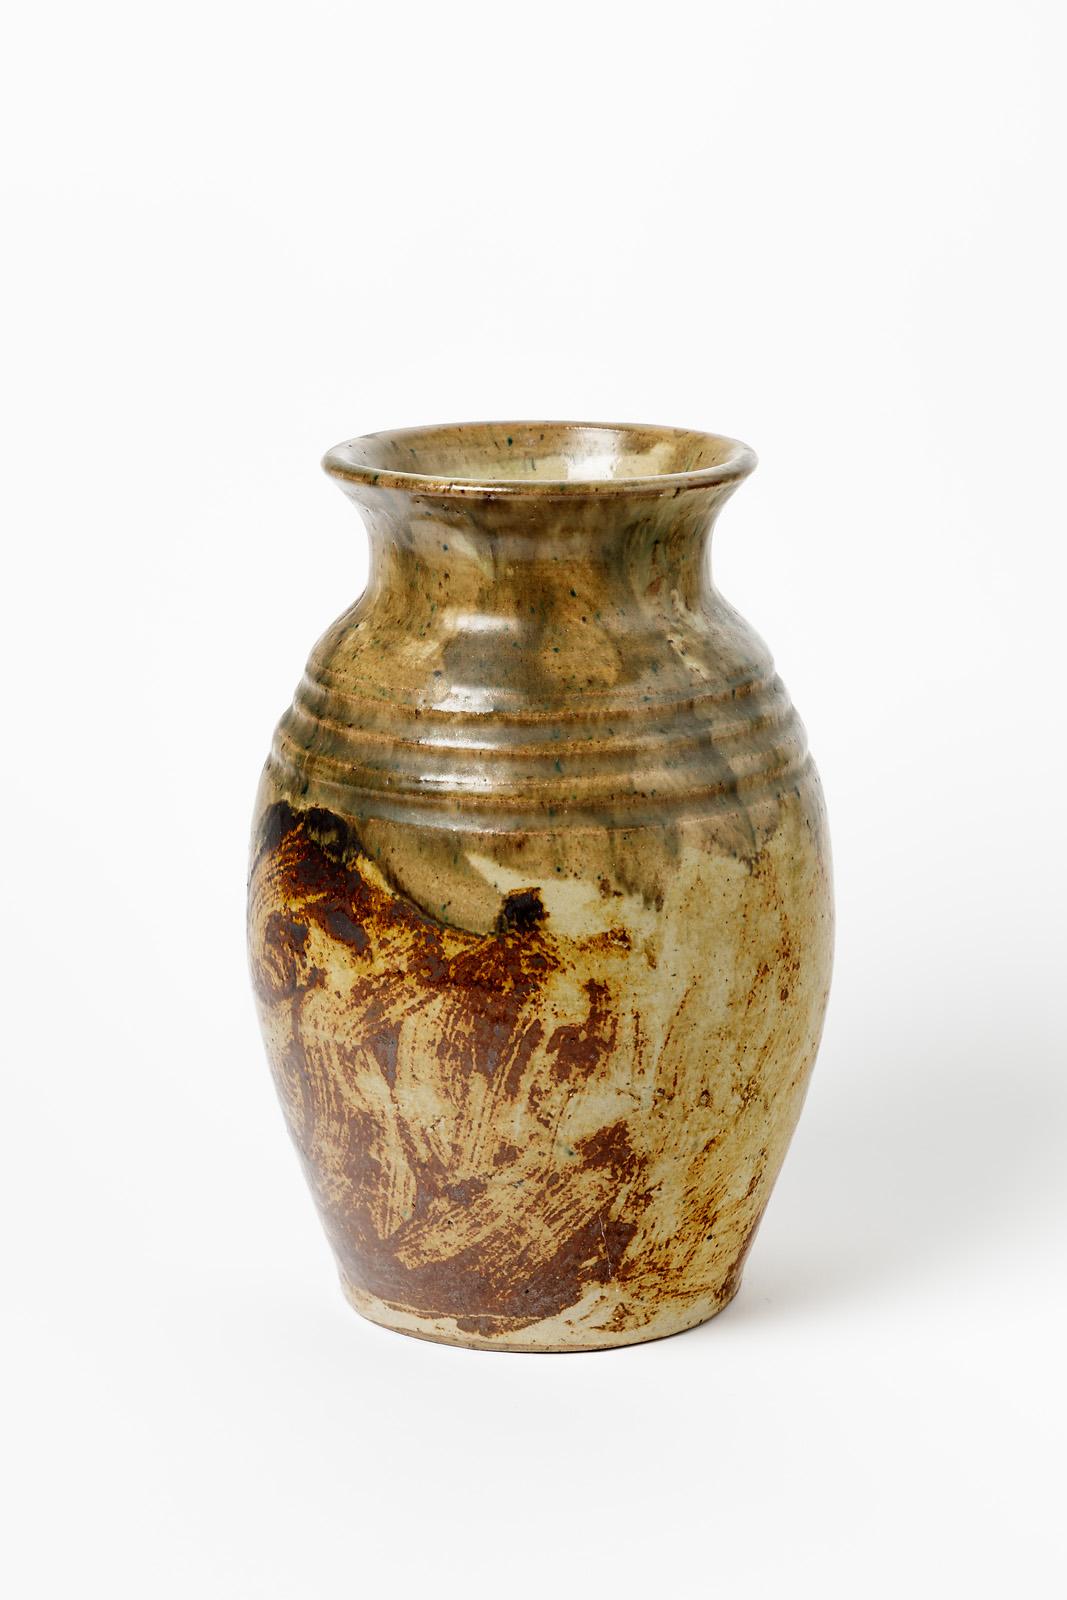 European Lucien Talbot 20th century brown art deco stoneware ceramic vase La Borne 1940 For Sale